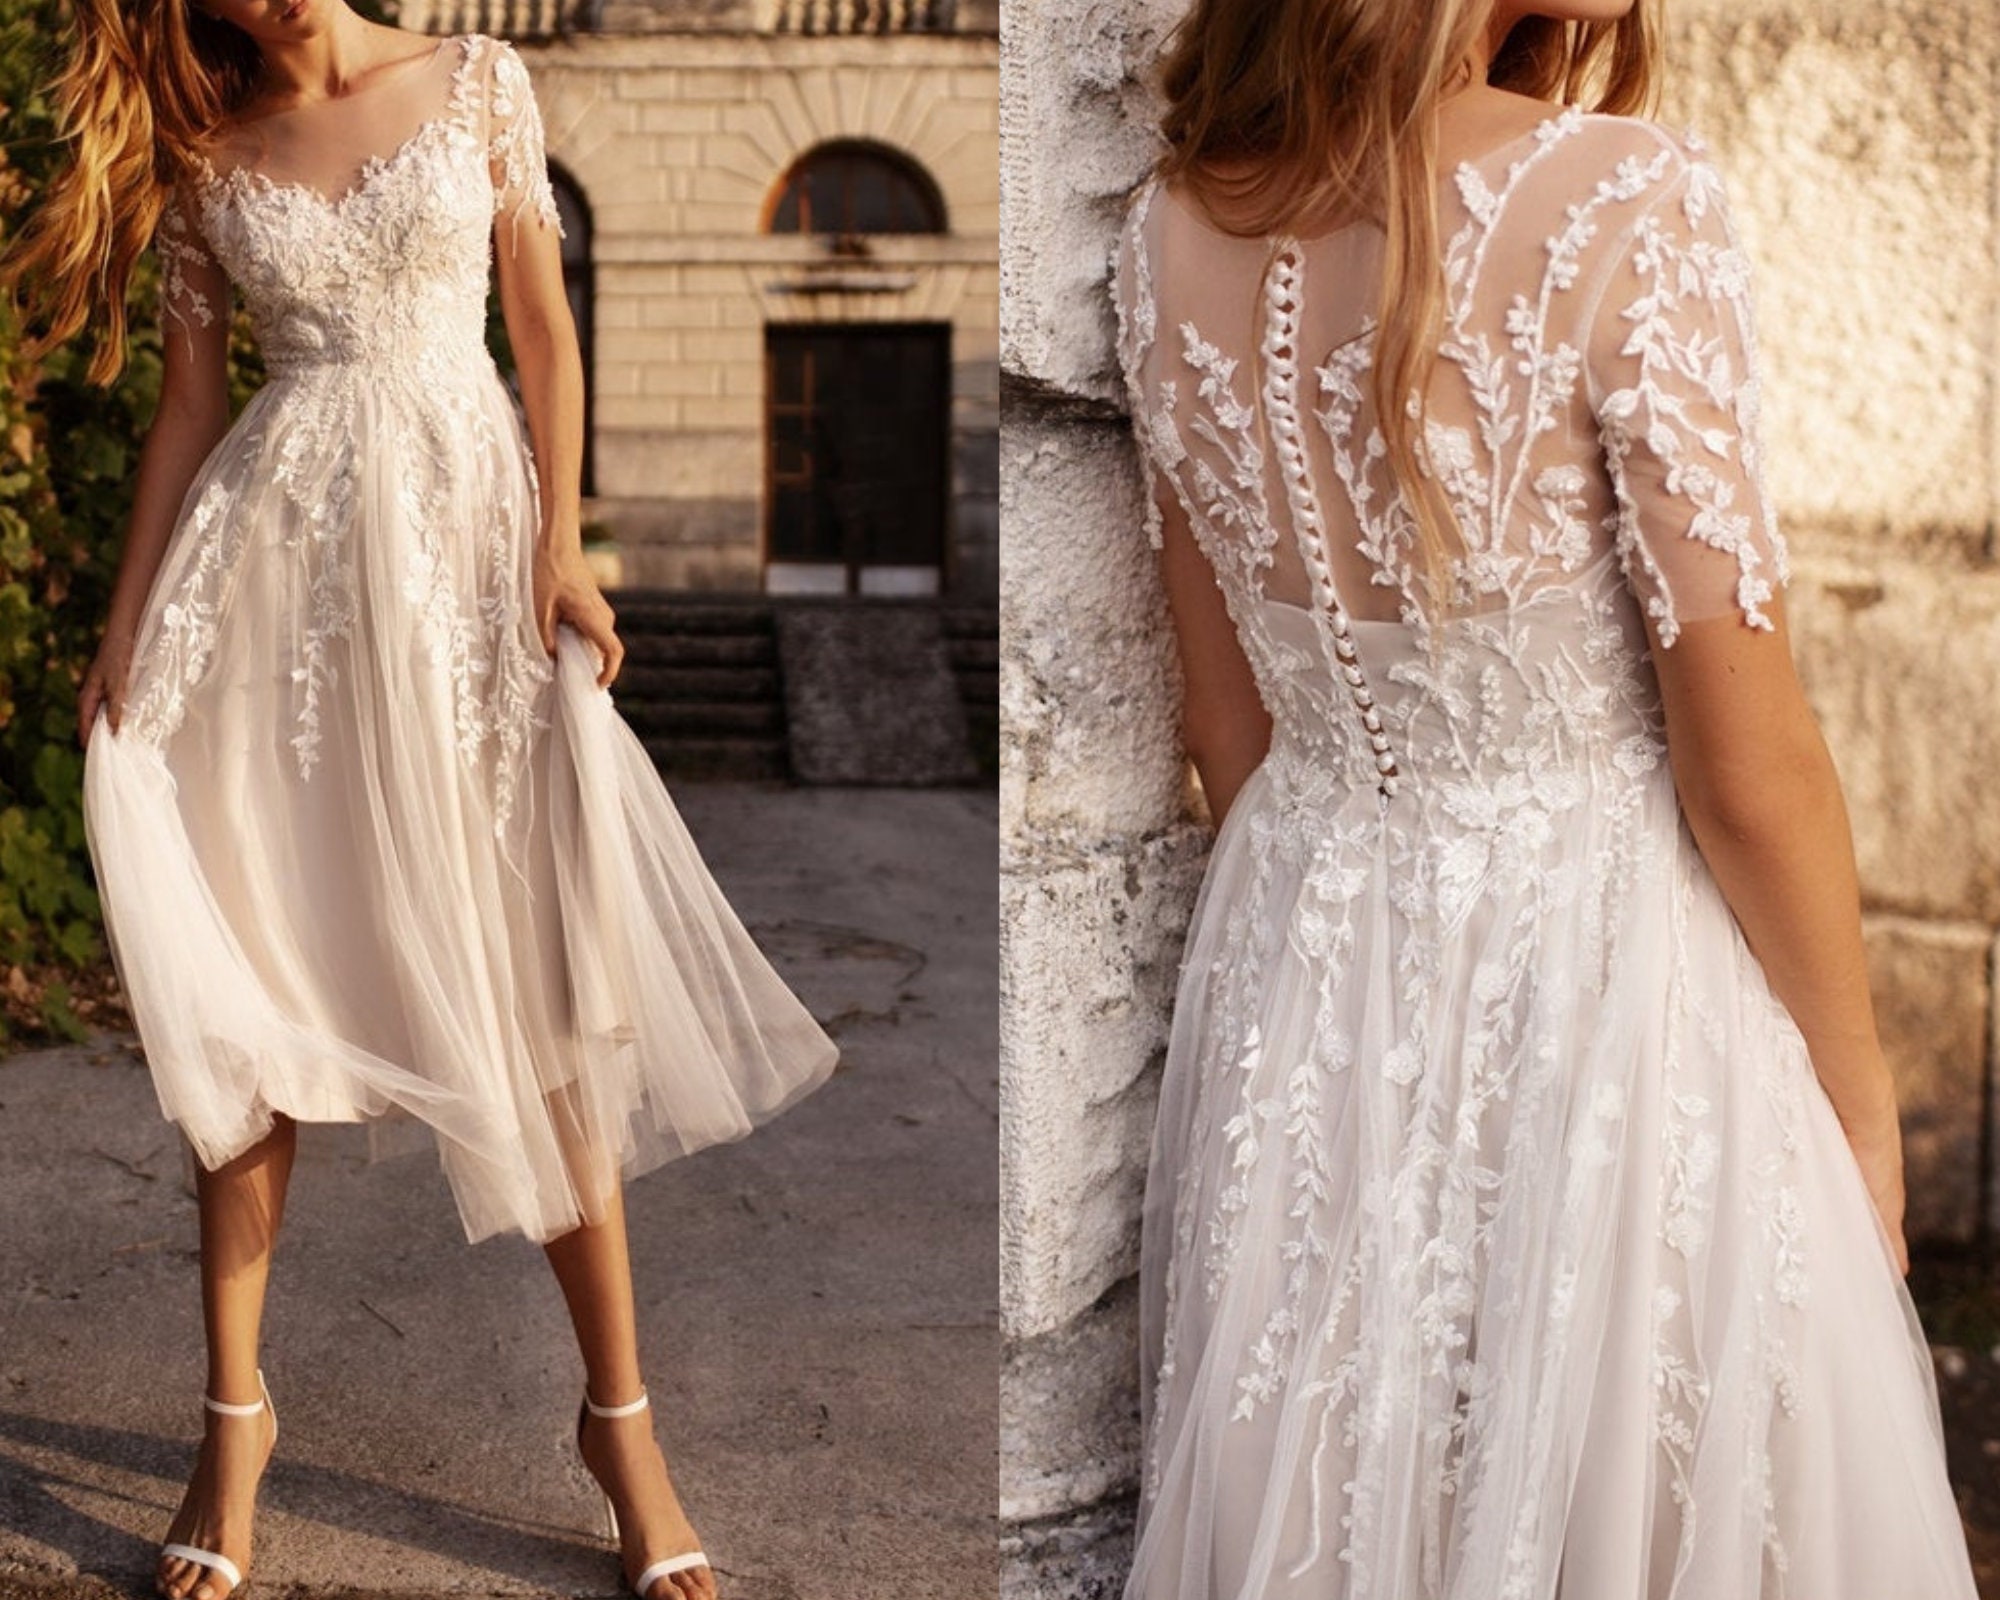 Fairytale Corset Wedding Dress Bridal Gown Lace beaded appliqués